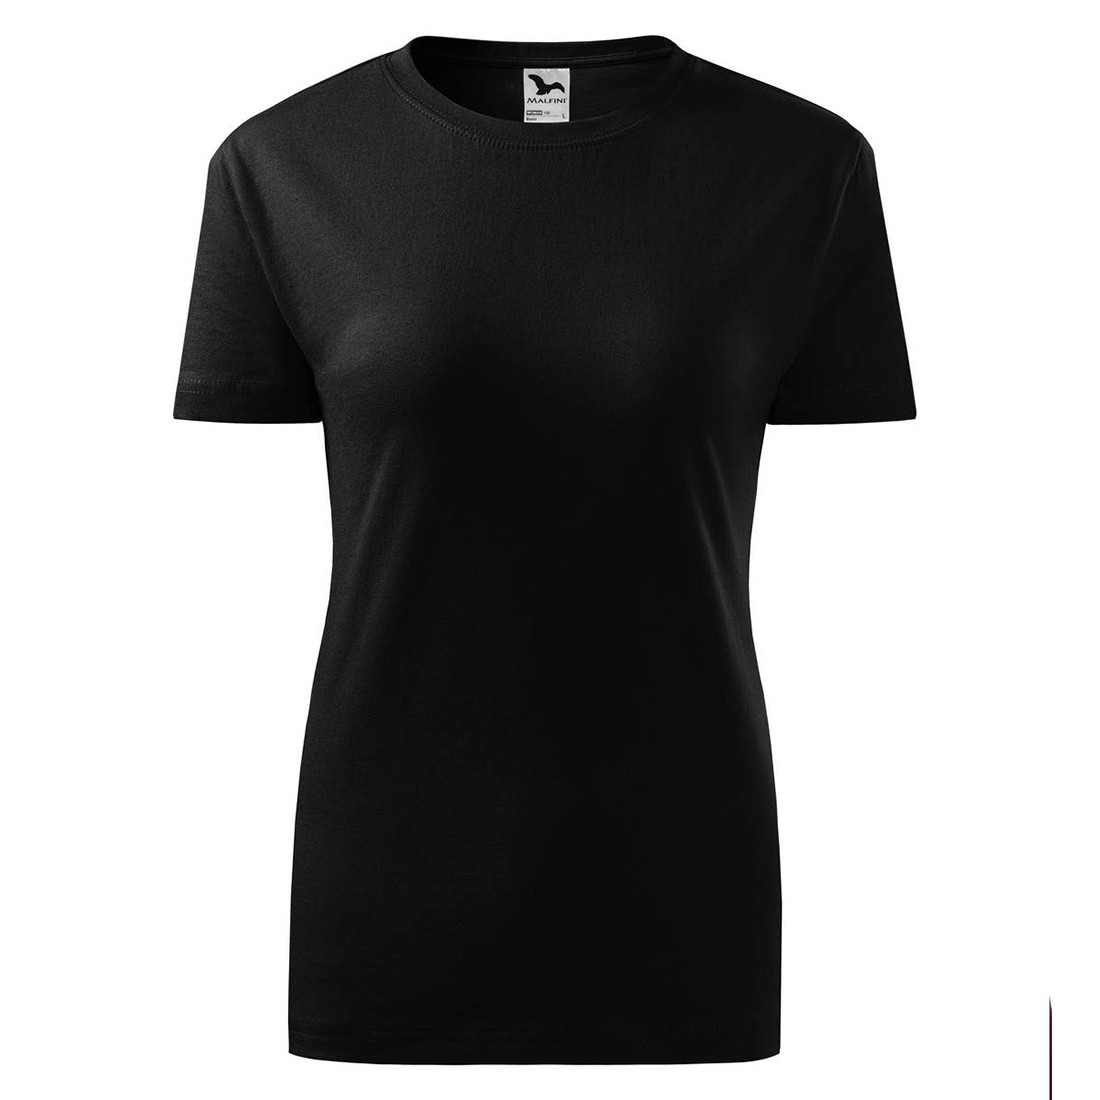 T-shirt Damen CLASSIC NEW - Arbeitskleidung